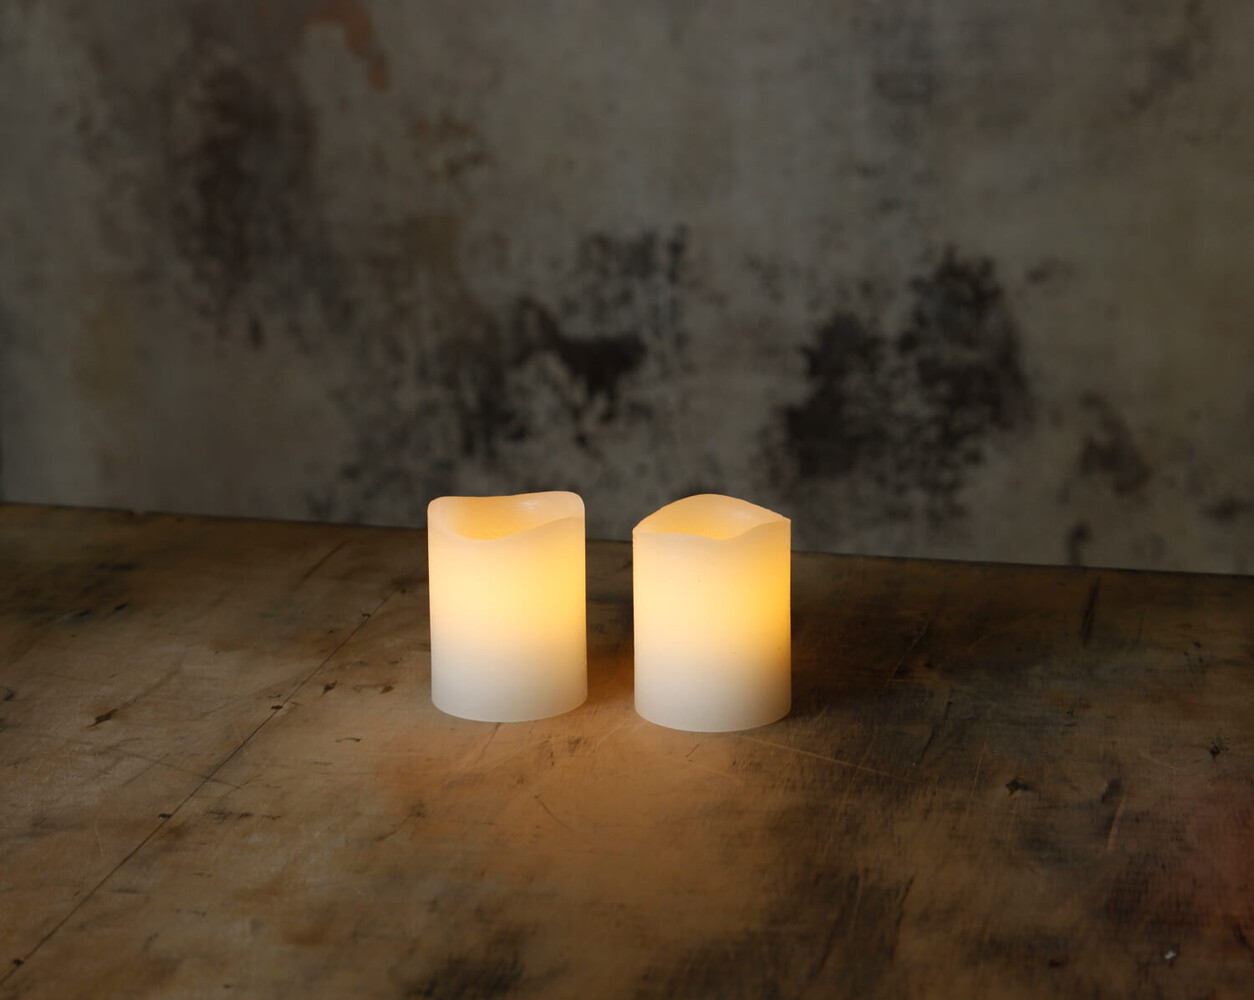 Exquisites Wachskerzen-Duo mit amber LED von Star Trading in reinem Weiß